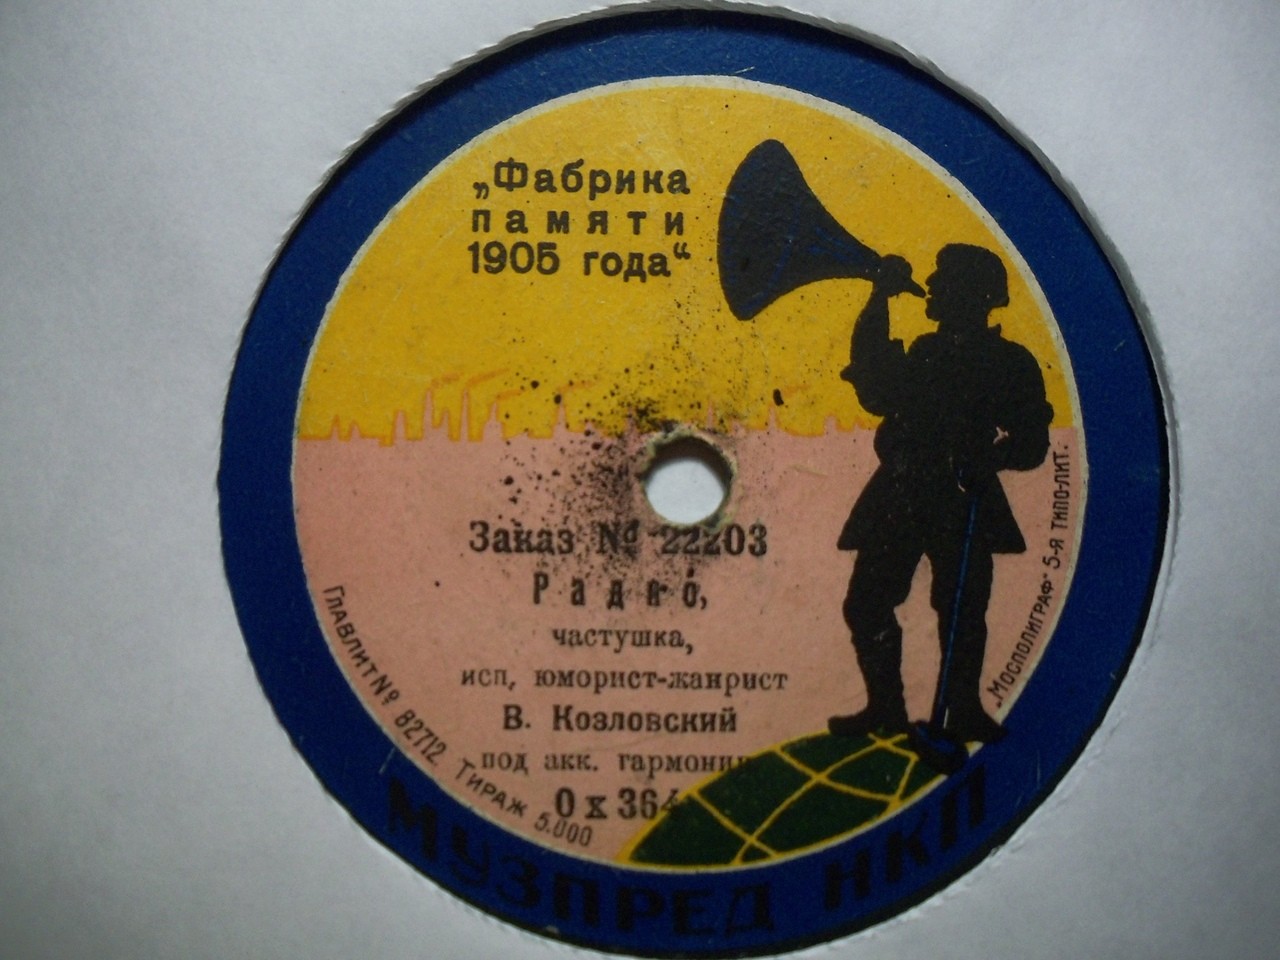 Ваня Козловский - Радио, частушка // Фабричная частушка (Приготовьтесь, я спою)